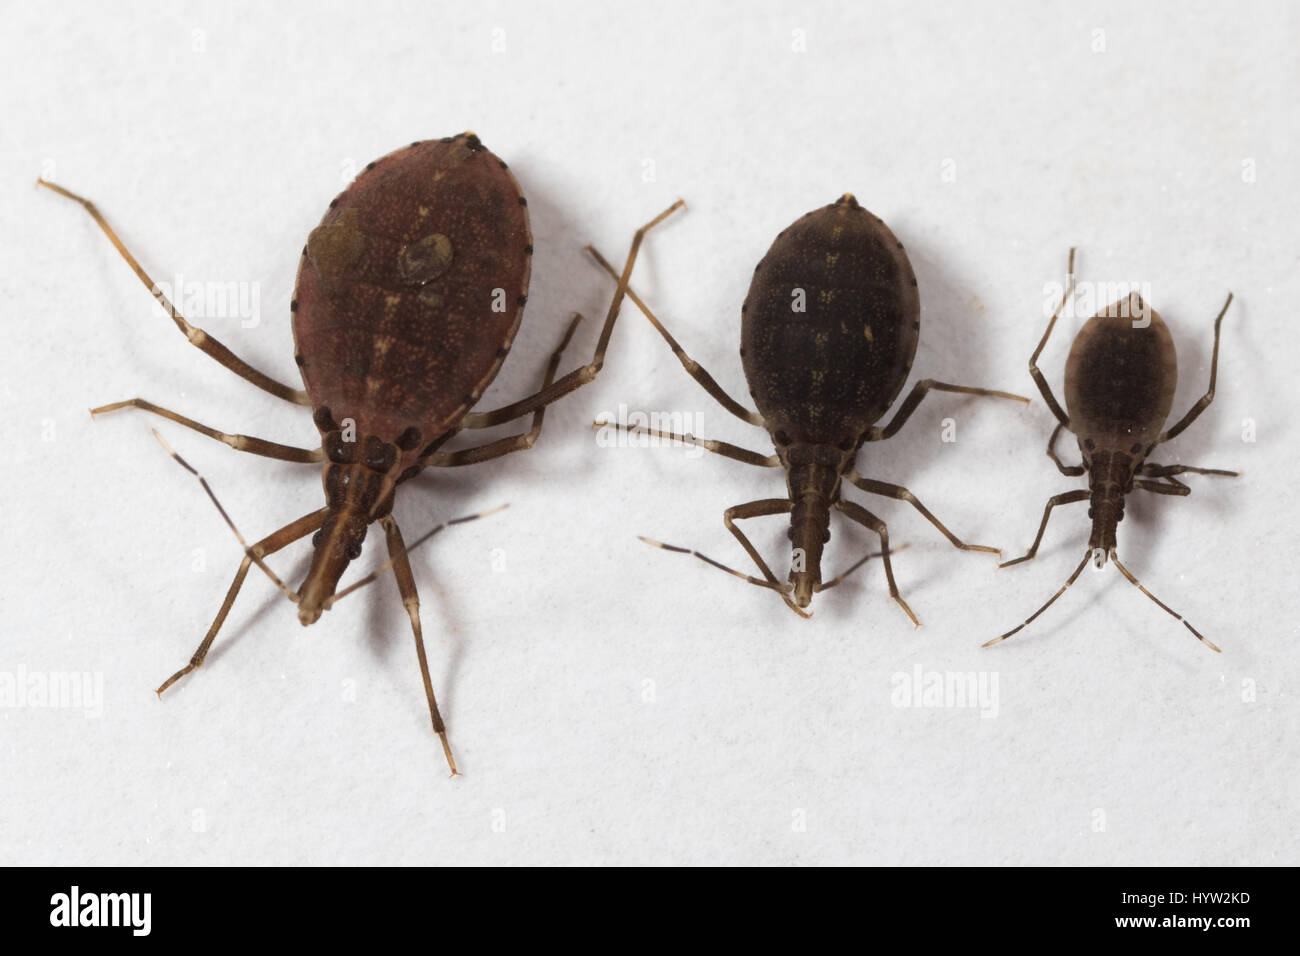 Größenvergleich des 2., 3. & 4. Instar Nymphen von Rhodnius Prolixus (Kissing Bugs) - das Insekt, das Chagas-Krankheit überträgt Stockfoto